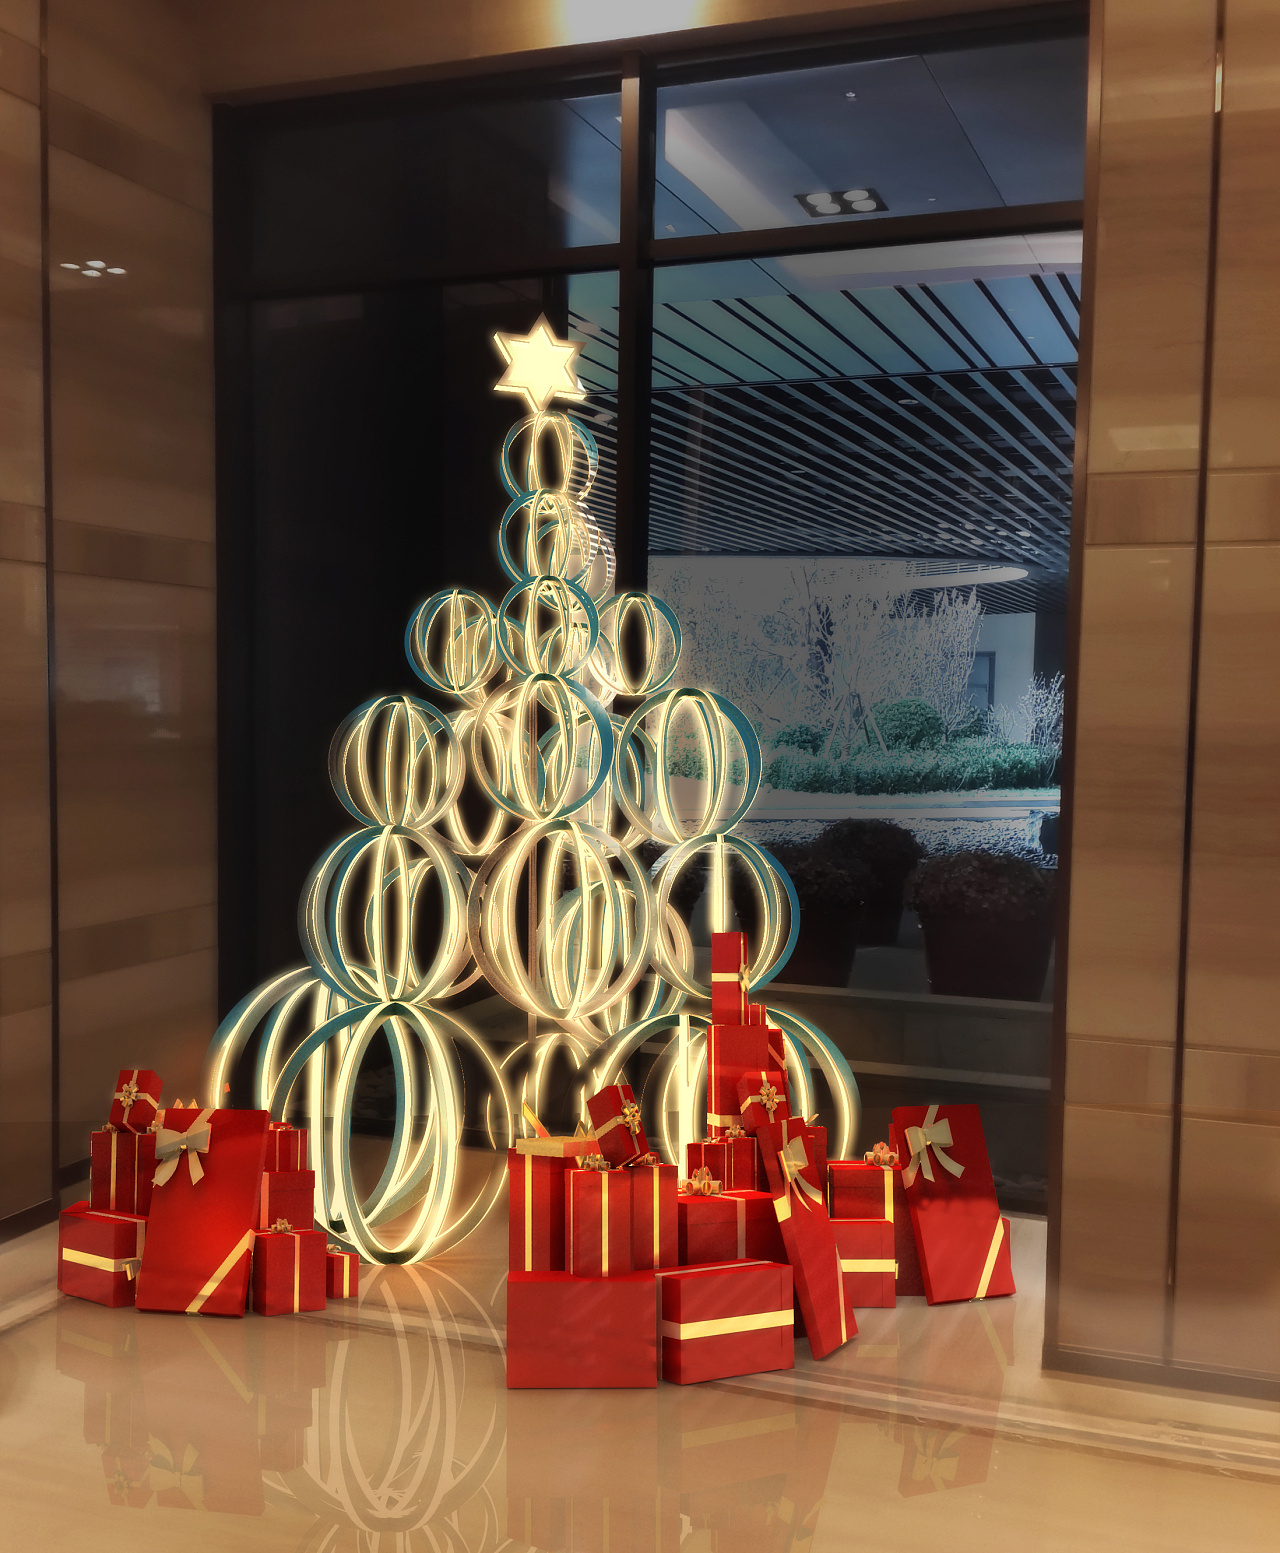 3D设计效果图 圣诞节商场门头装饰灯圣诞美陈|资讯-元素谷(OSOGOO)